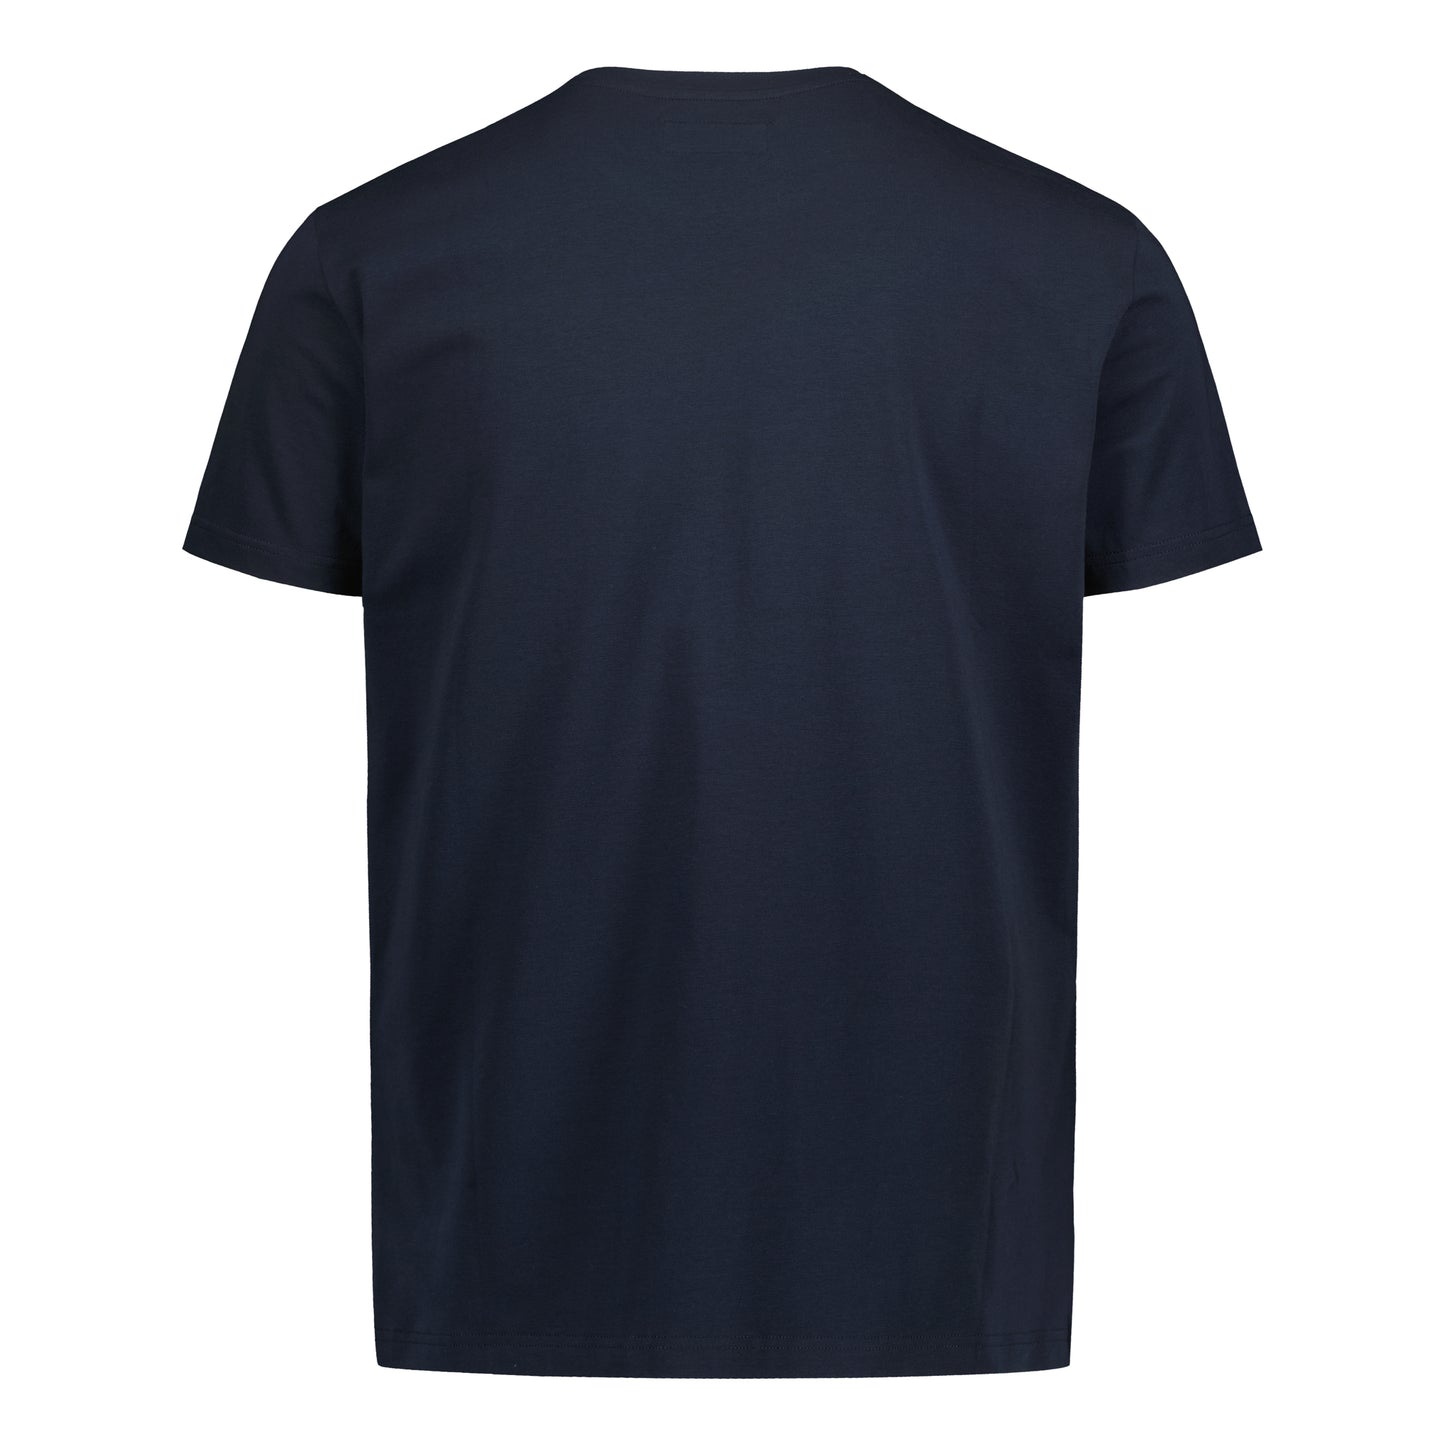 T-Shirt Navy